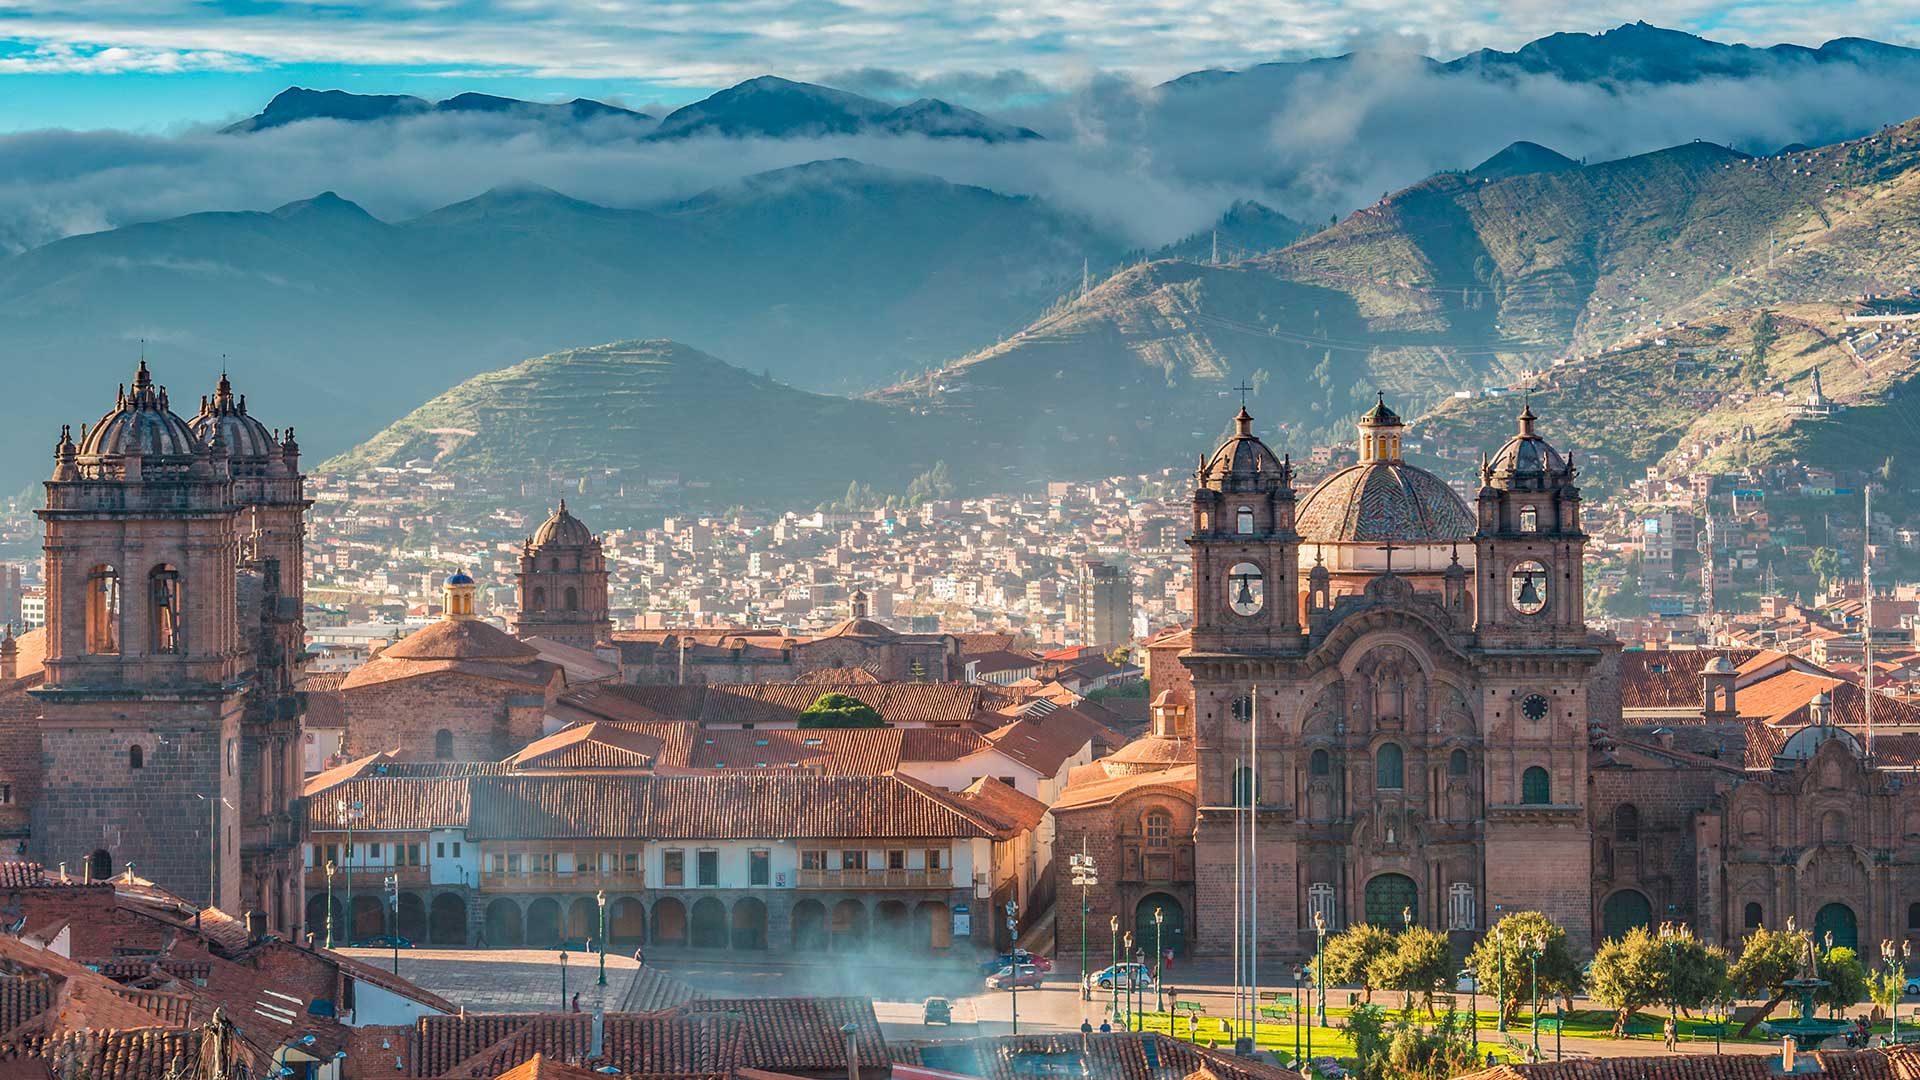 Naar Cusco, de hoofdstad van het oude Incarijk